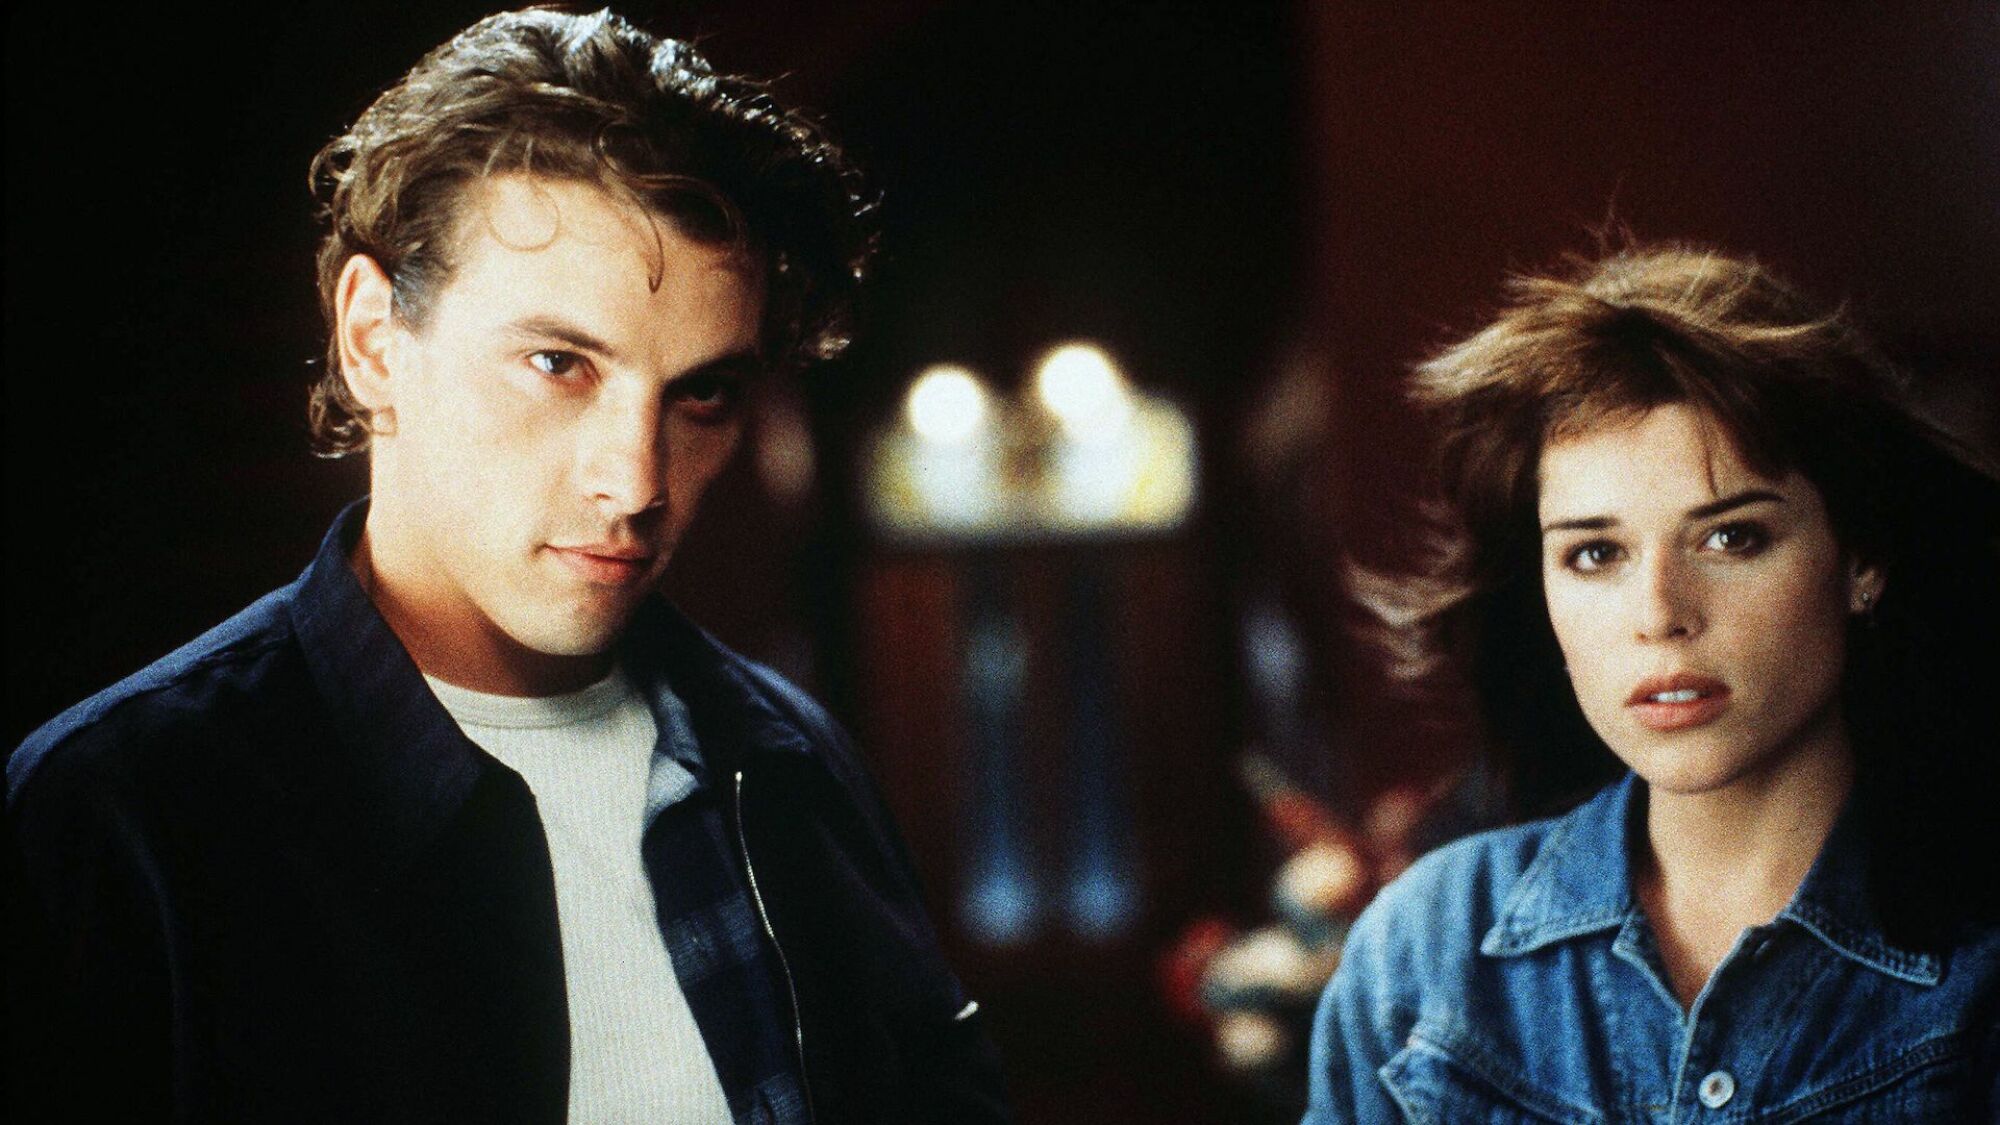 Deux jeunes acteurs dans le film des années 90 "Scream représente un coup de presse, tous deux portant des chemises boutonnées.